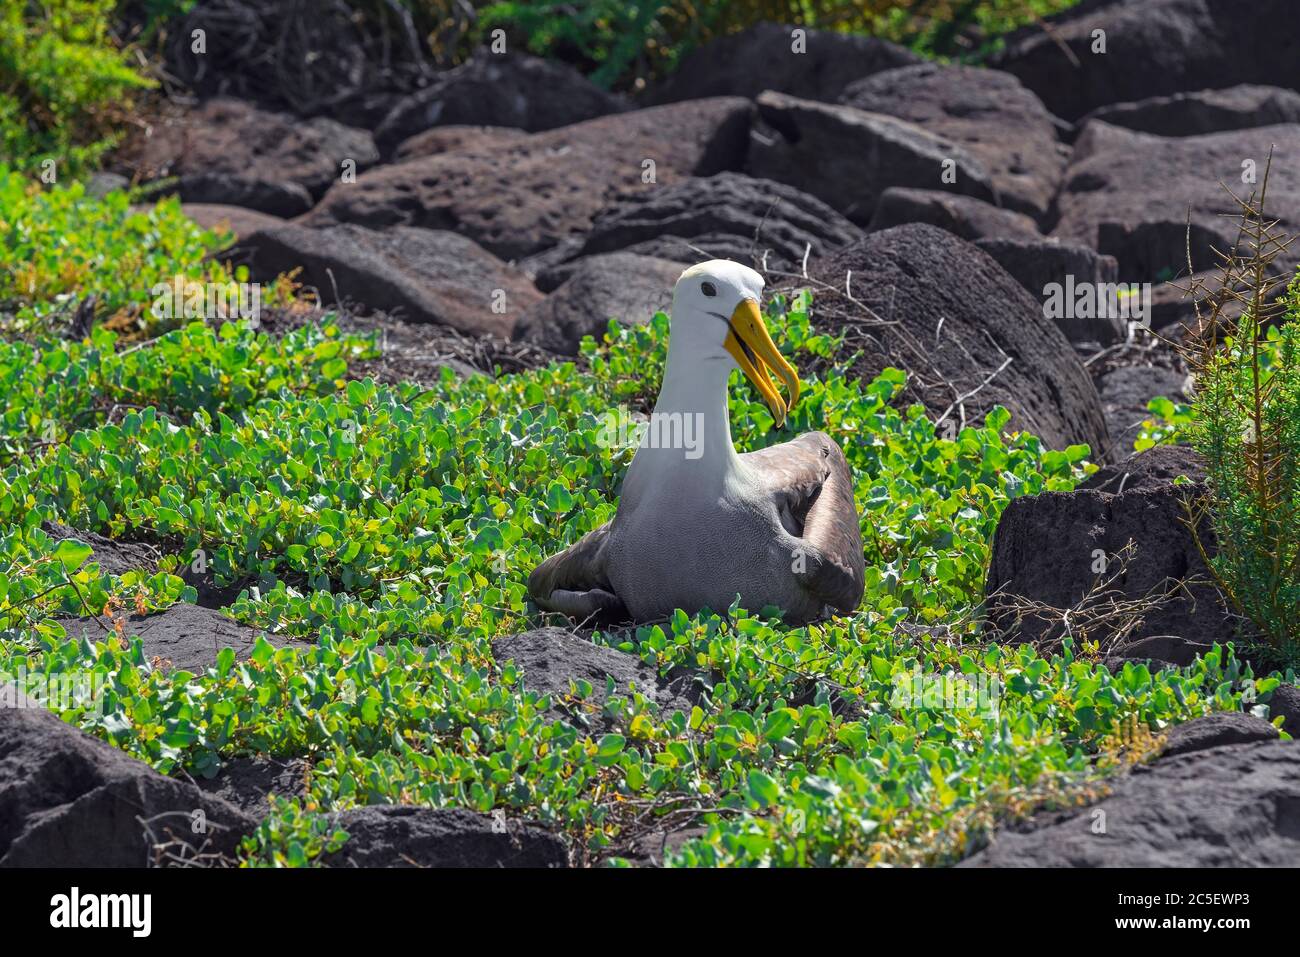 Un mâle endémique Galapagos ou Albatros ondulé (Phoebastria irrorata) sur l'île d'Espanola, parc national de Galapagos, Équateur. Banque D'Images